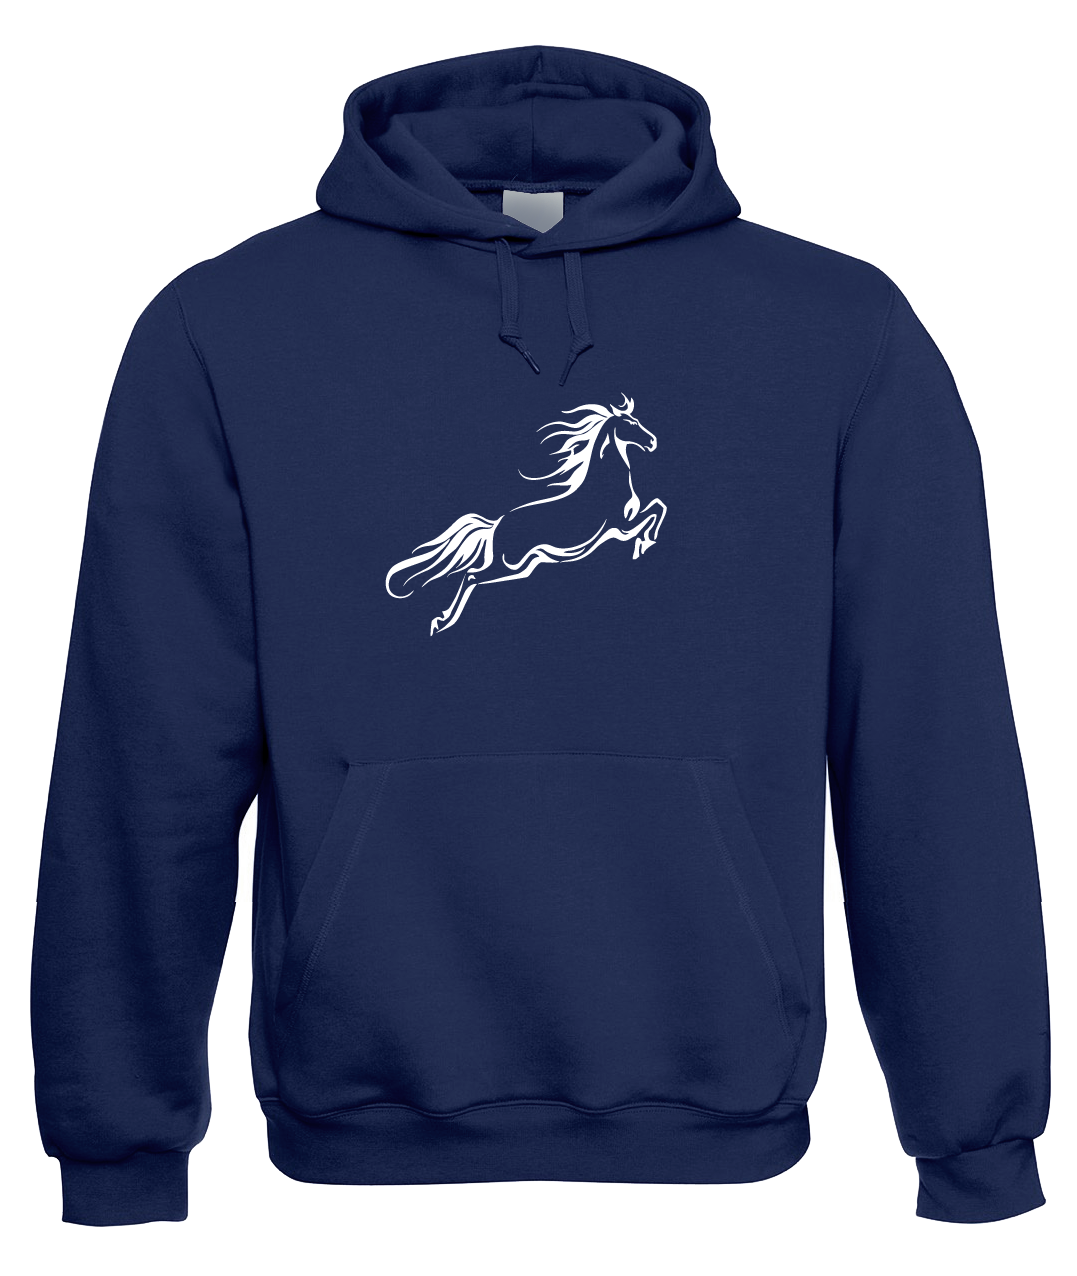 Mikina s koněm - Kůň ve skoku Velikost: M, Barva: Tmavě modrá